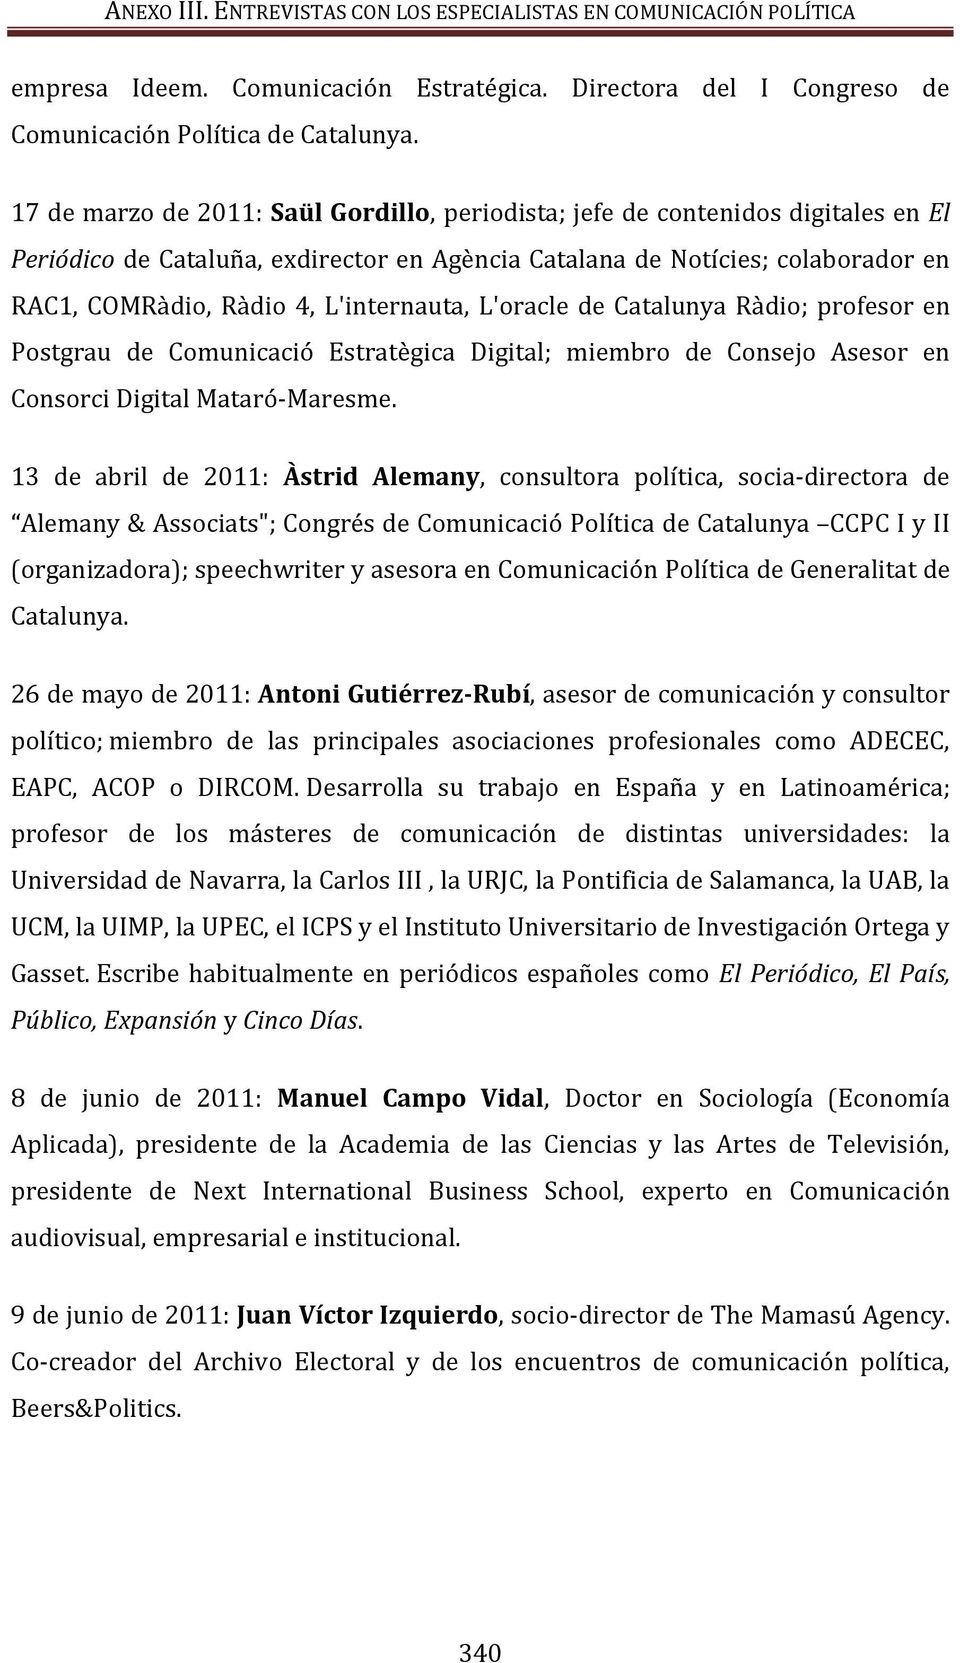 L'internauta, L'oracle de Catalunya Ràdio; profesor en Postgrau de Comunicació Estratègica Digital; miembro de Consejo Asesor en Consorci Digital Mataró-Maresme.